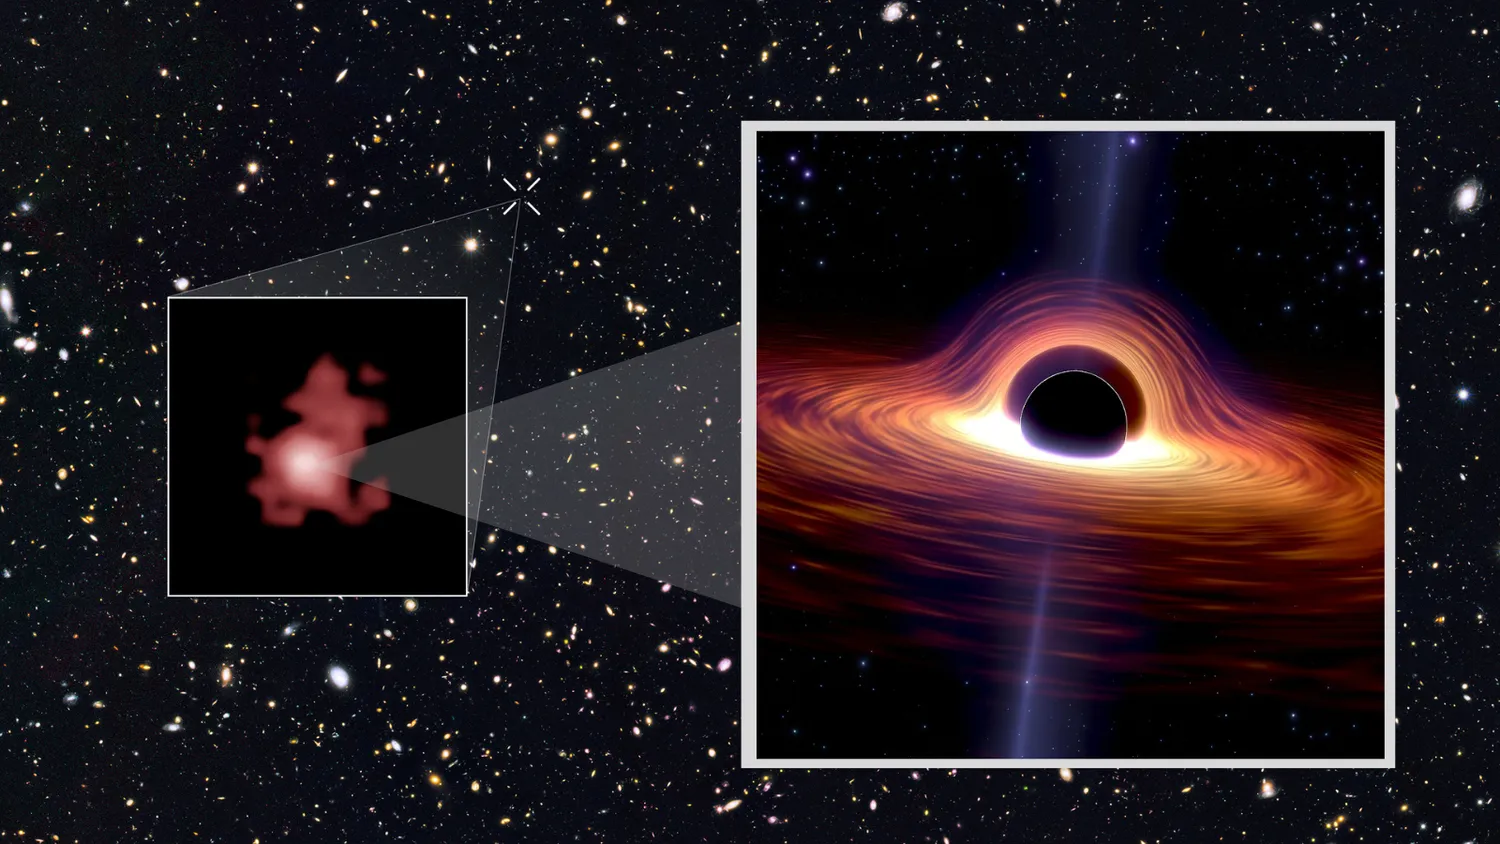 Die Galaxie GN-z11, wie sie von Hubble gesehen wurde (Inset), eine Illustration eines sich ernährenden Schwarzen Lochs